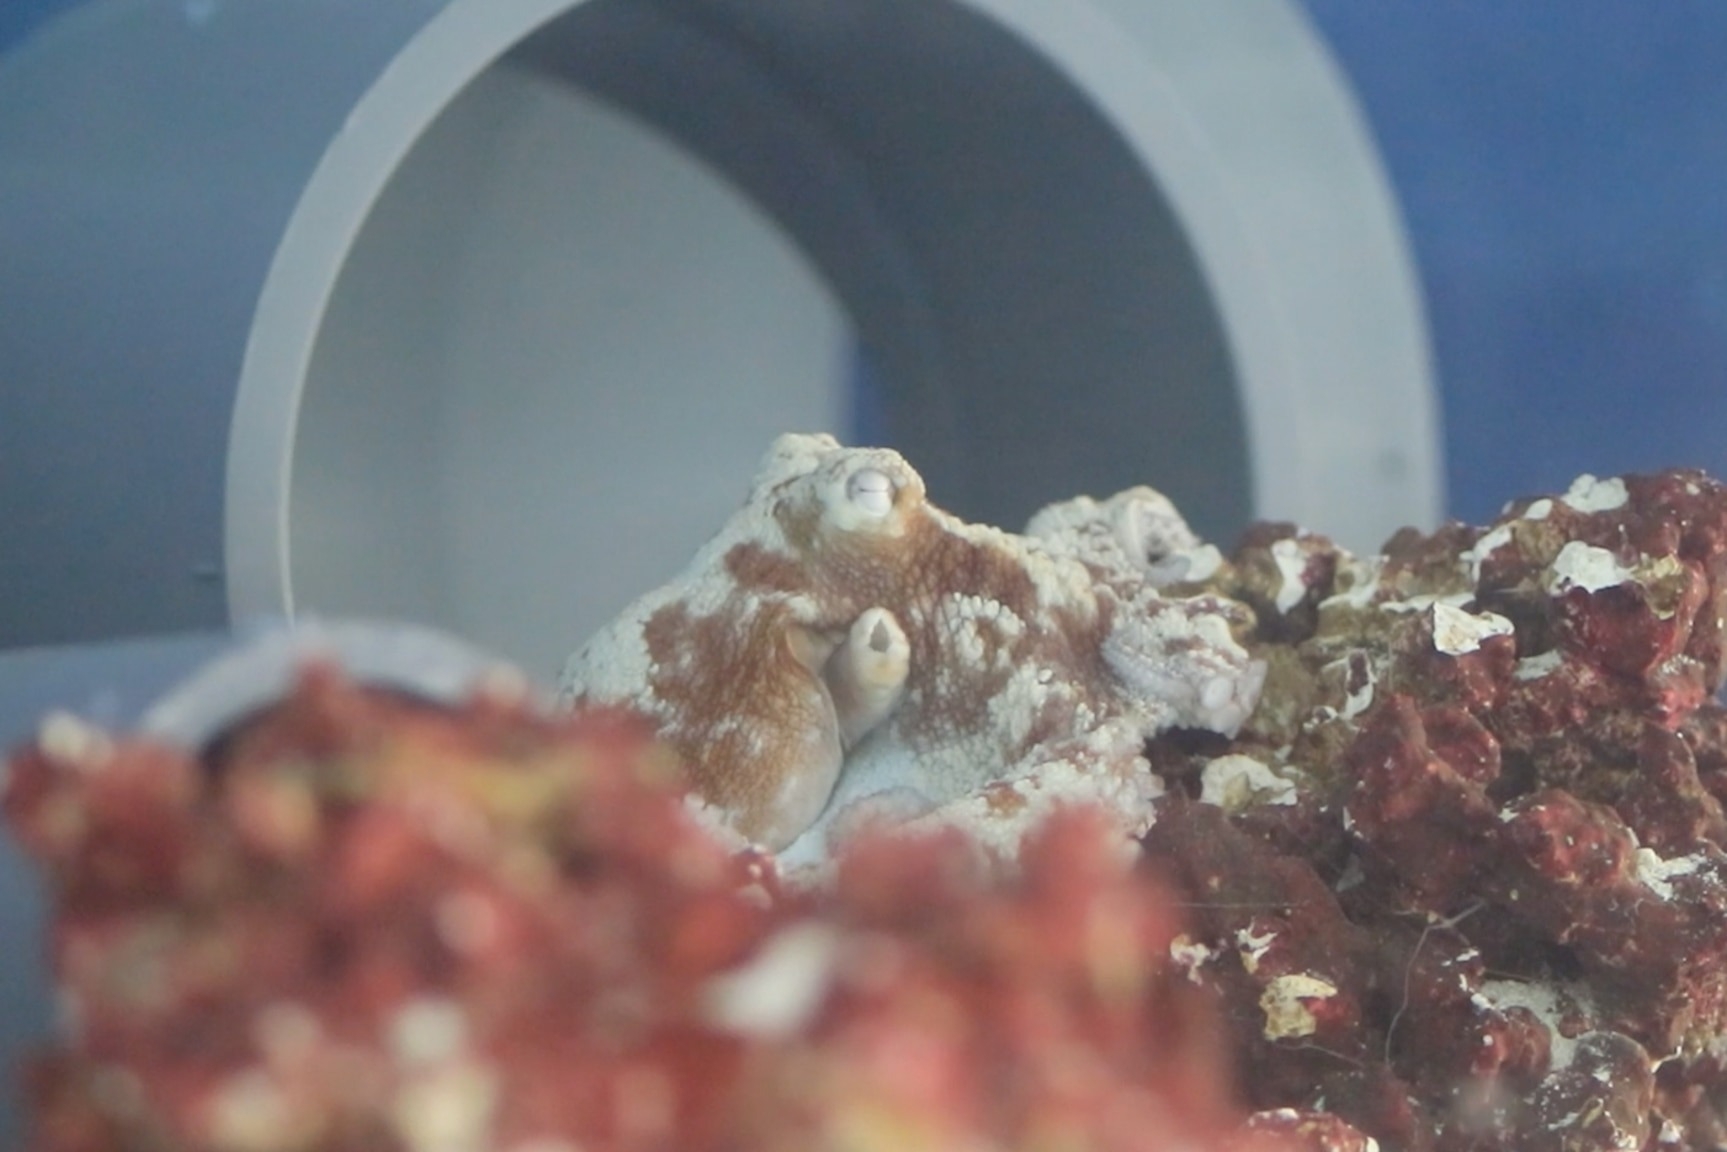 在紐約洛克斐勒大學整合神經科學實驗室（Laboratory of Integrative Neuroscience）拍攝的影片中，靜靜沉睡的巴西珊瑚礁章魚「卡斯提洛」。IMAGE BY LABORATORY OF INTEGRATIVE NEUROSCIENCE AT THE ROCKEFELLER UNIVERSITY